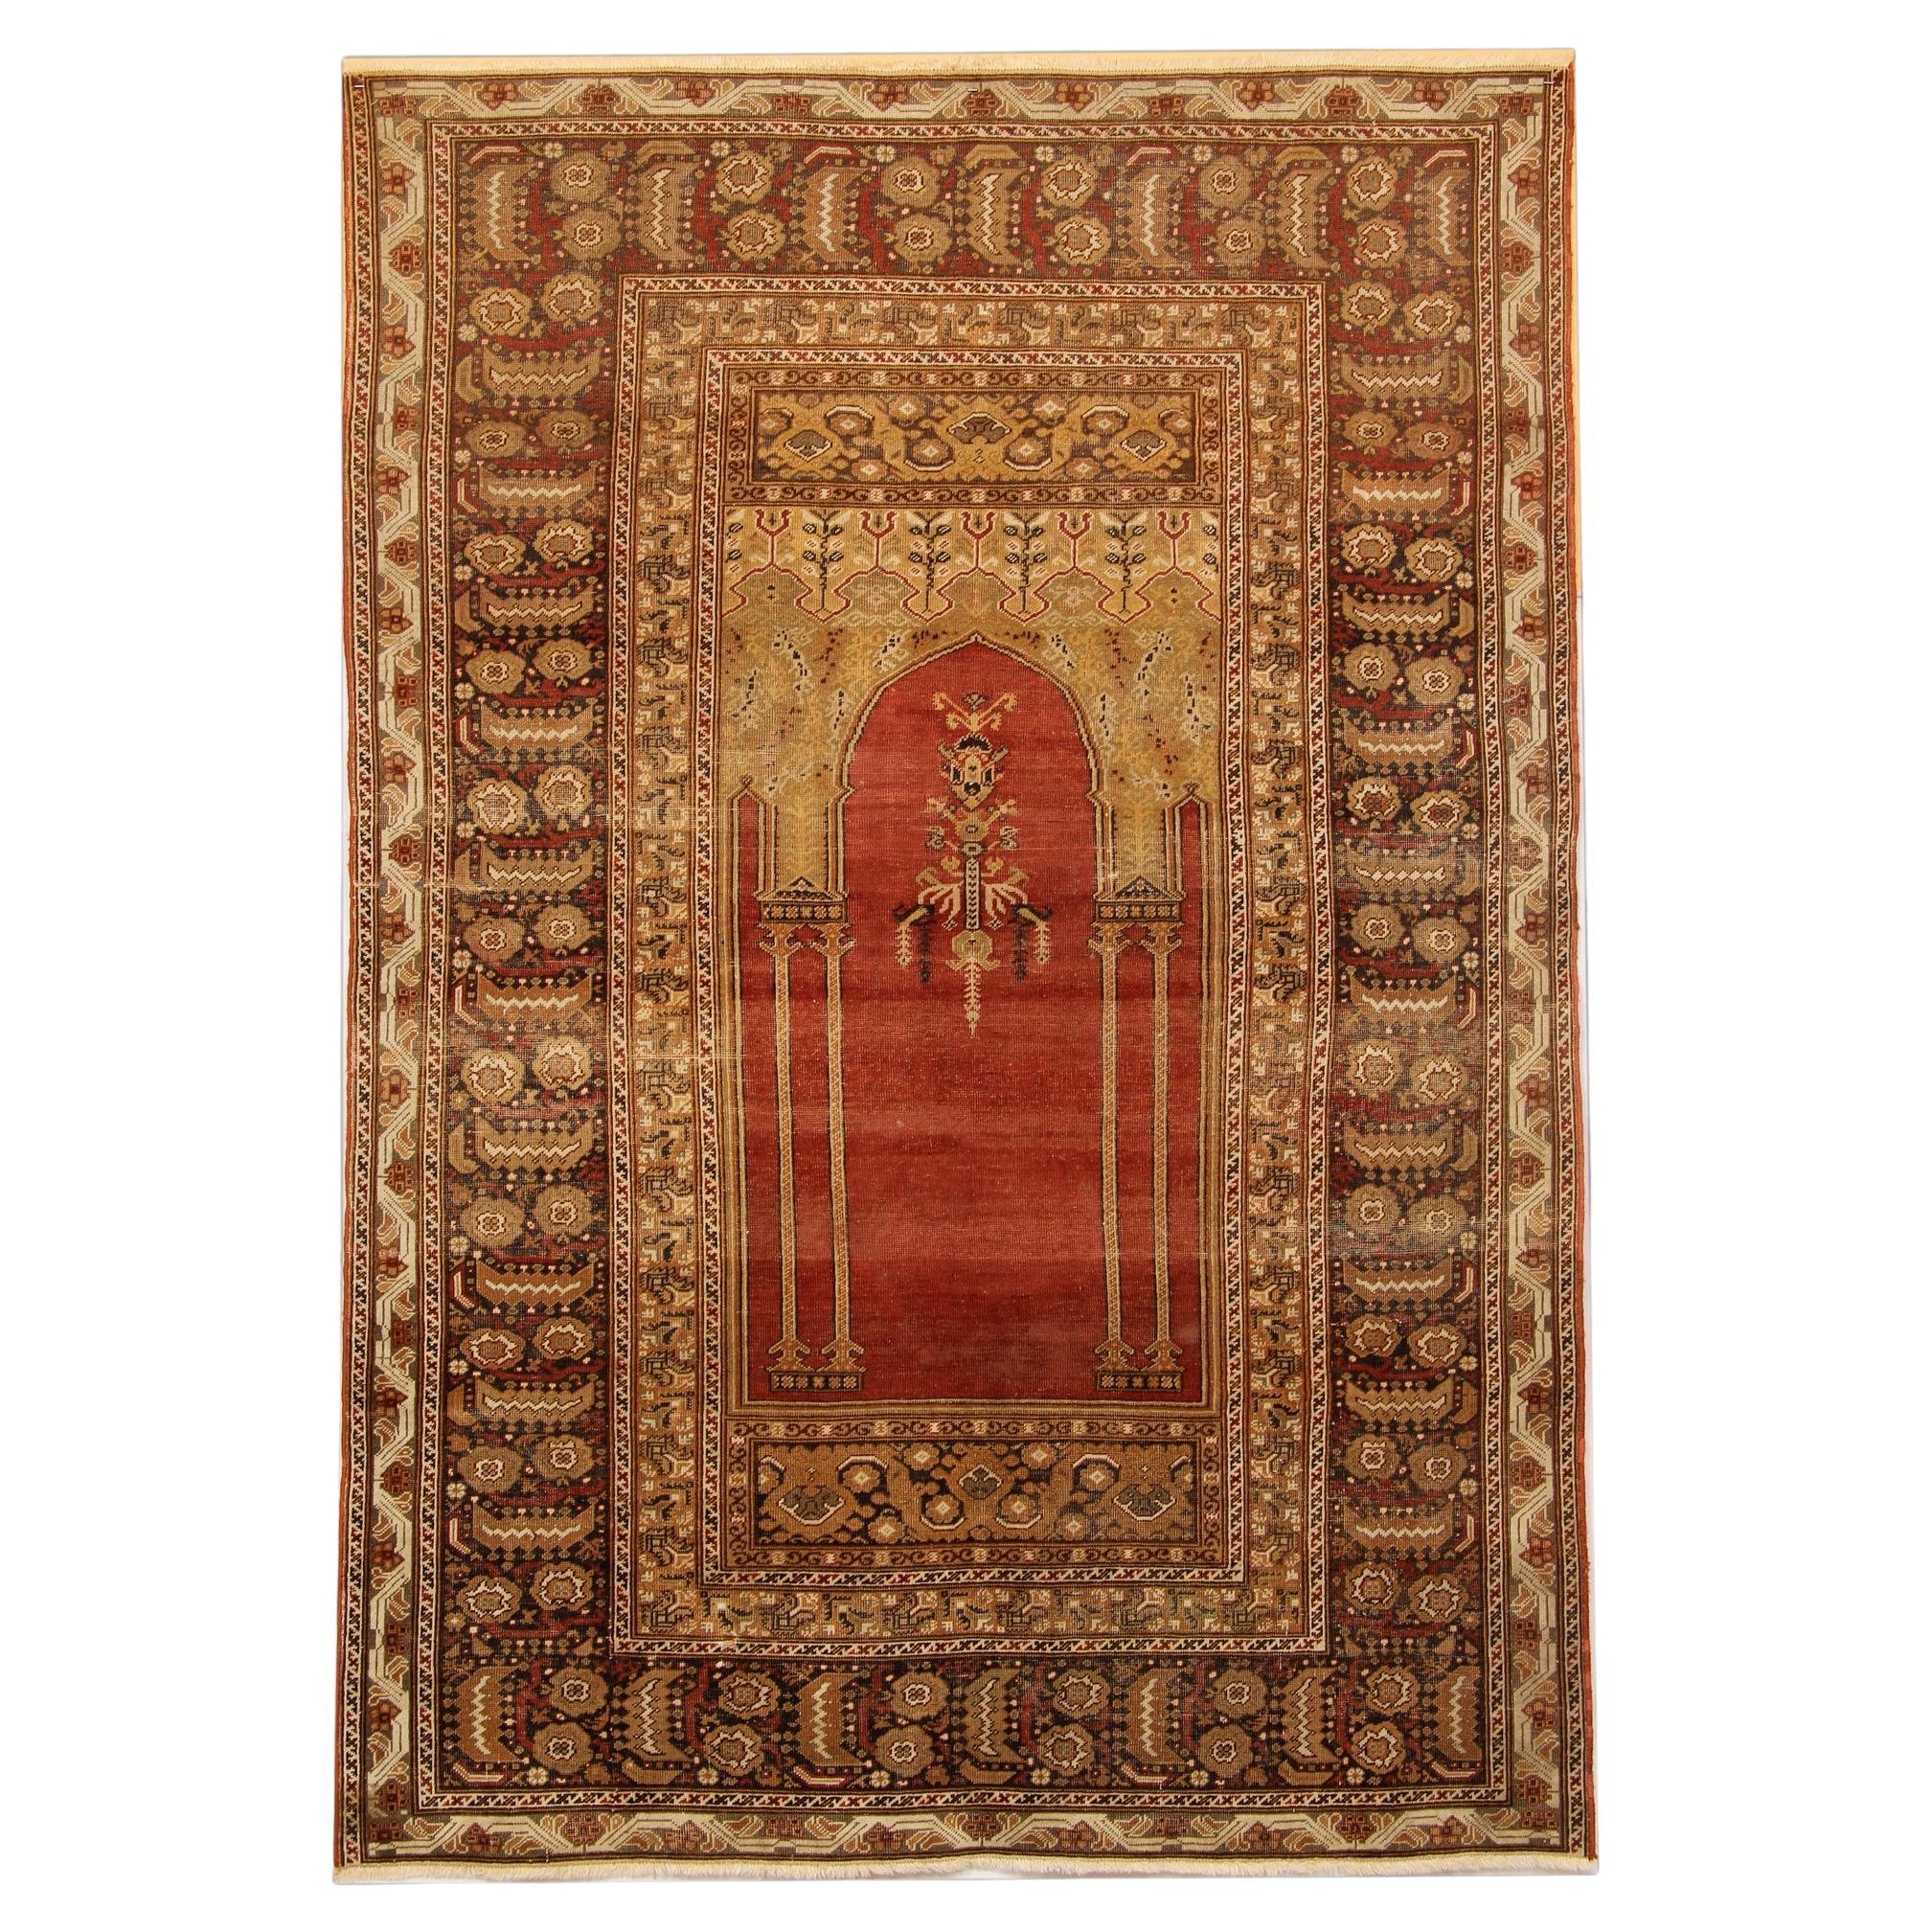 Tapis anciens rouges, tapis traditionnel turc, tapis de salon Mihrabi en vente